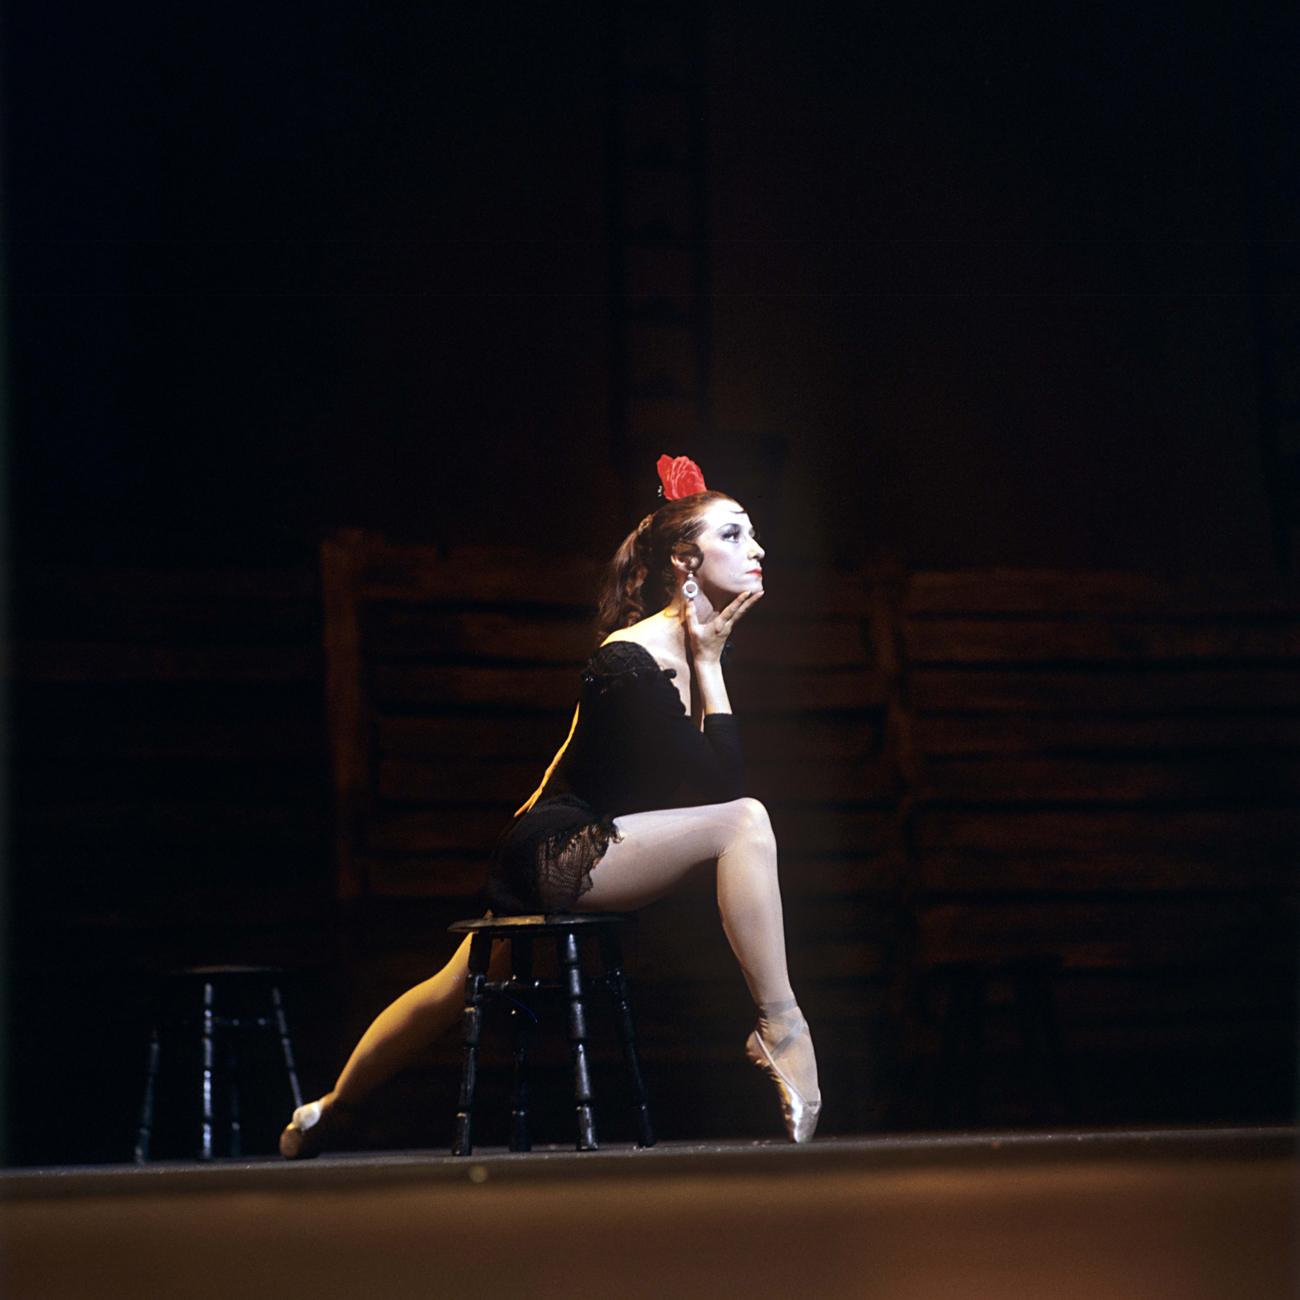 Мая Плисецкая в ролята на Кармен в сцена от балетната сюита "Кармен" по музика на Жордж Бизе и аранжимент на Родион Шчедрин в Болшой театър. Снимка: РИА "Новости"